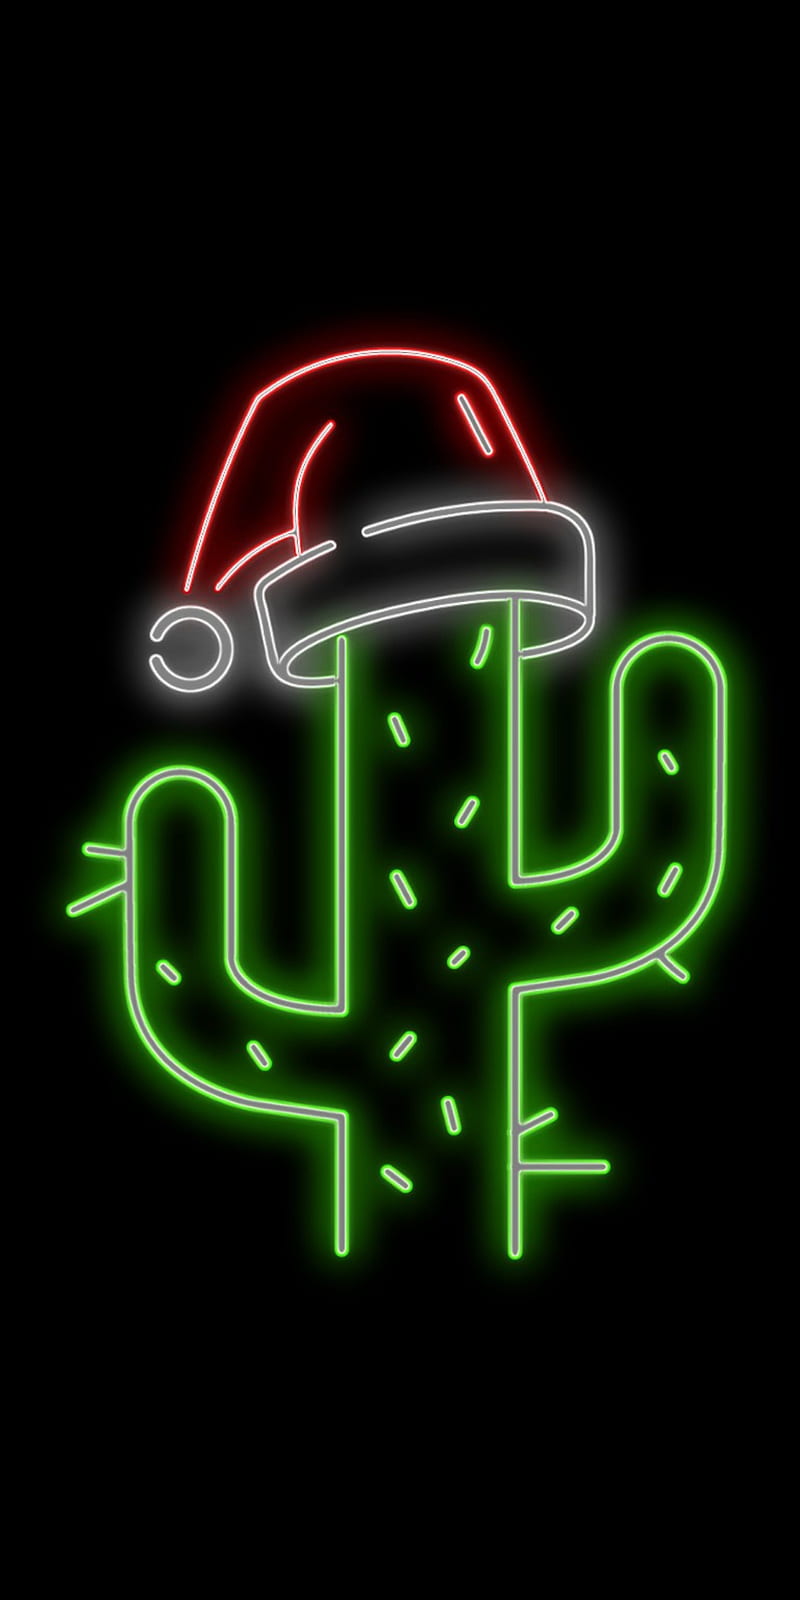 Merry Christmas, cactus, feliz navidad, gorrito de navidad, neon, HD phone wallpaper